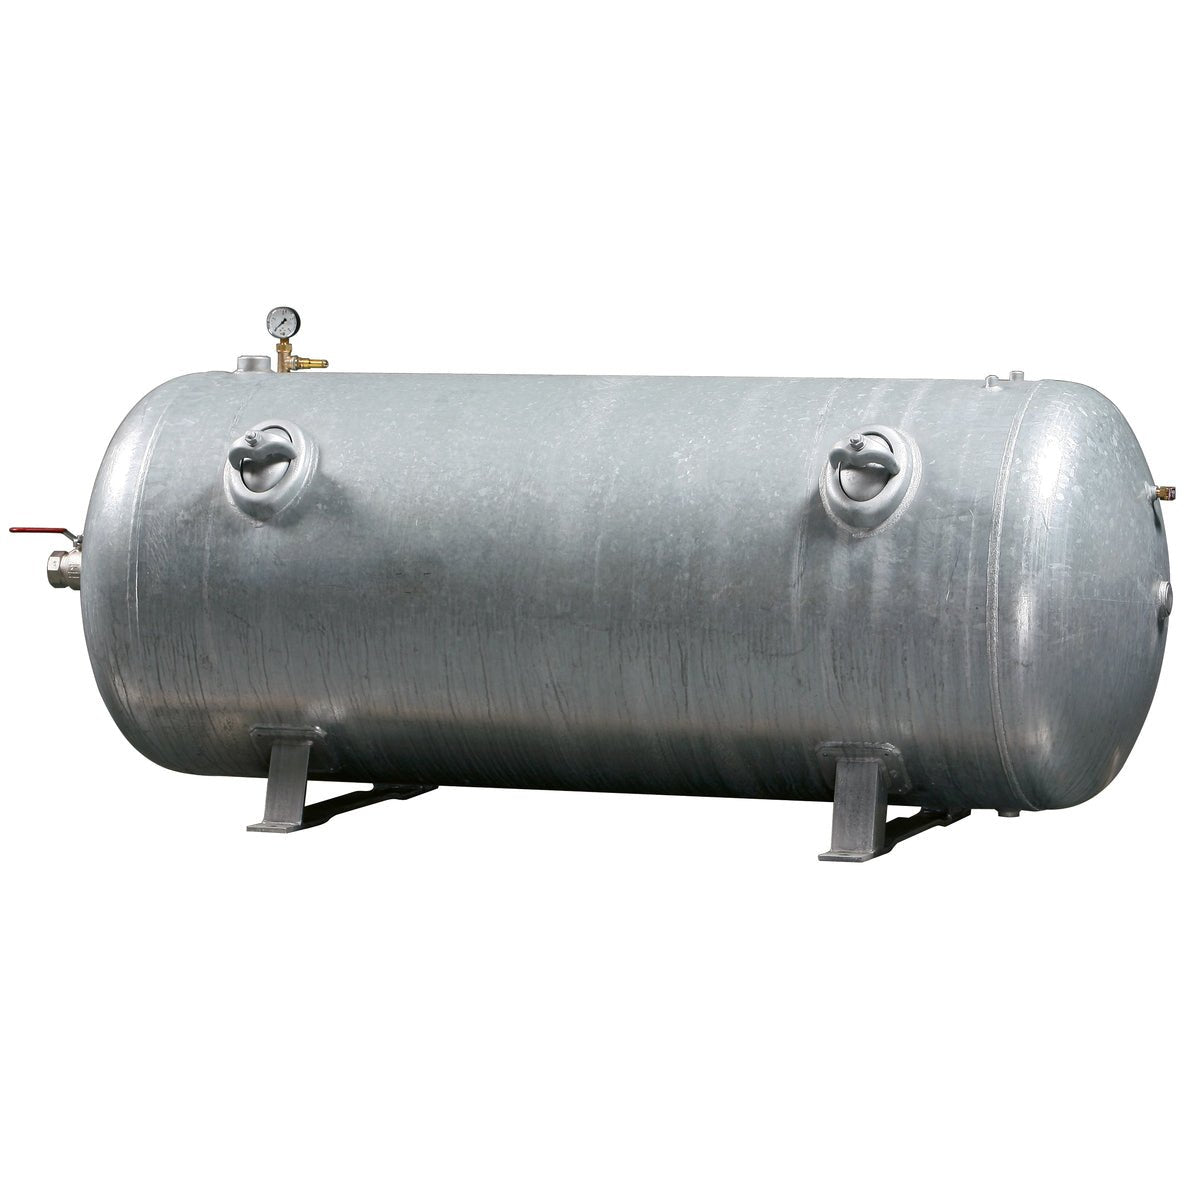 Kaeser Druckluftbehälter 250/11 lg. CE/SPV